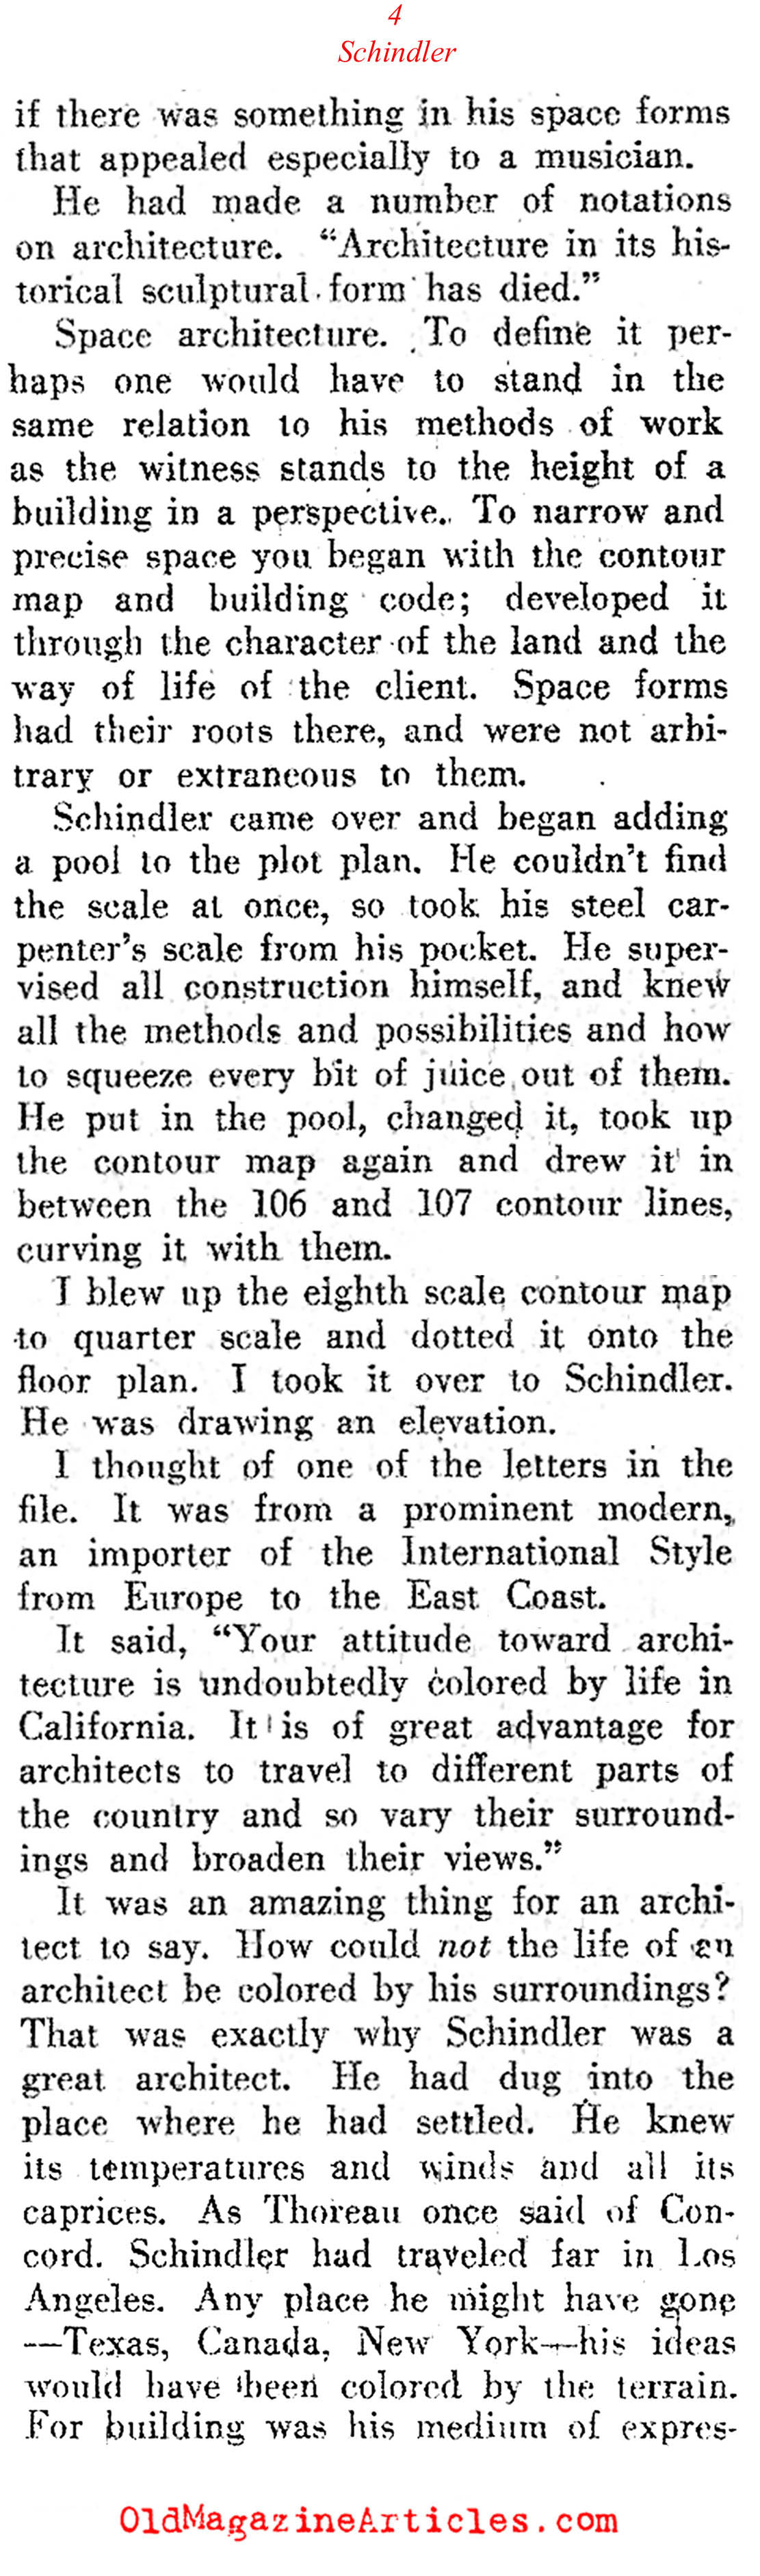 Architect Rudolf Schindler (Direction Magazine, 1945)